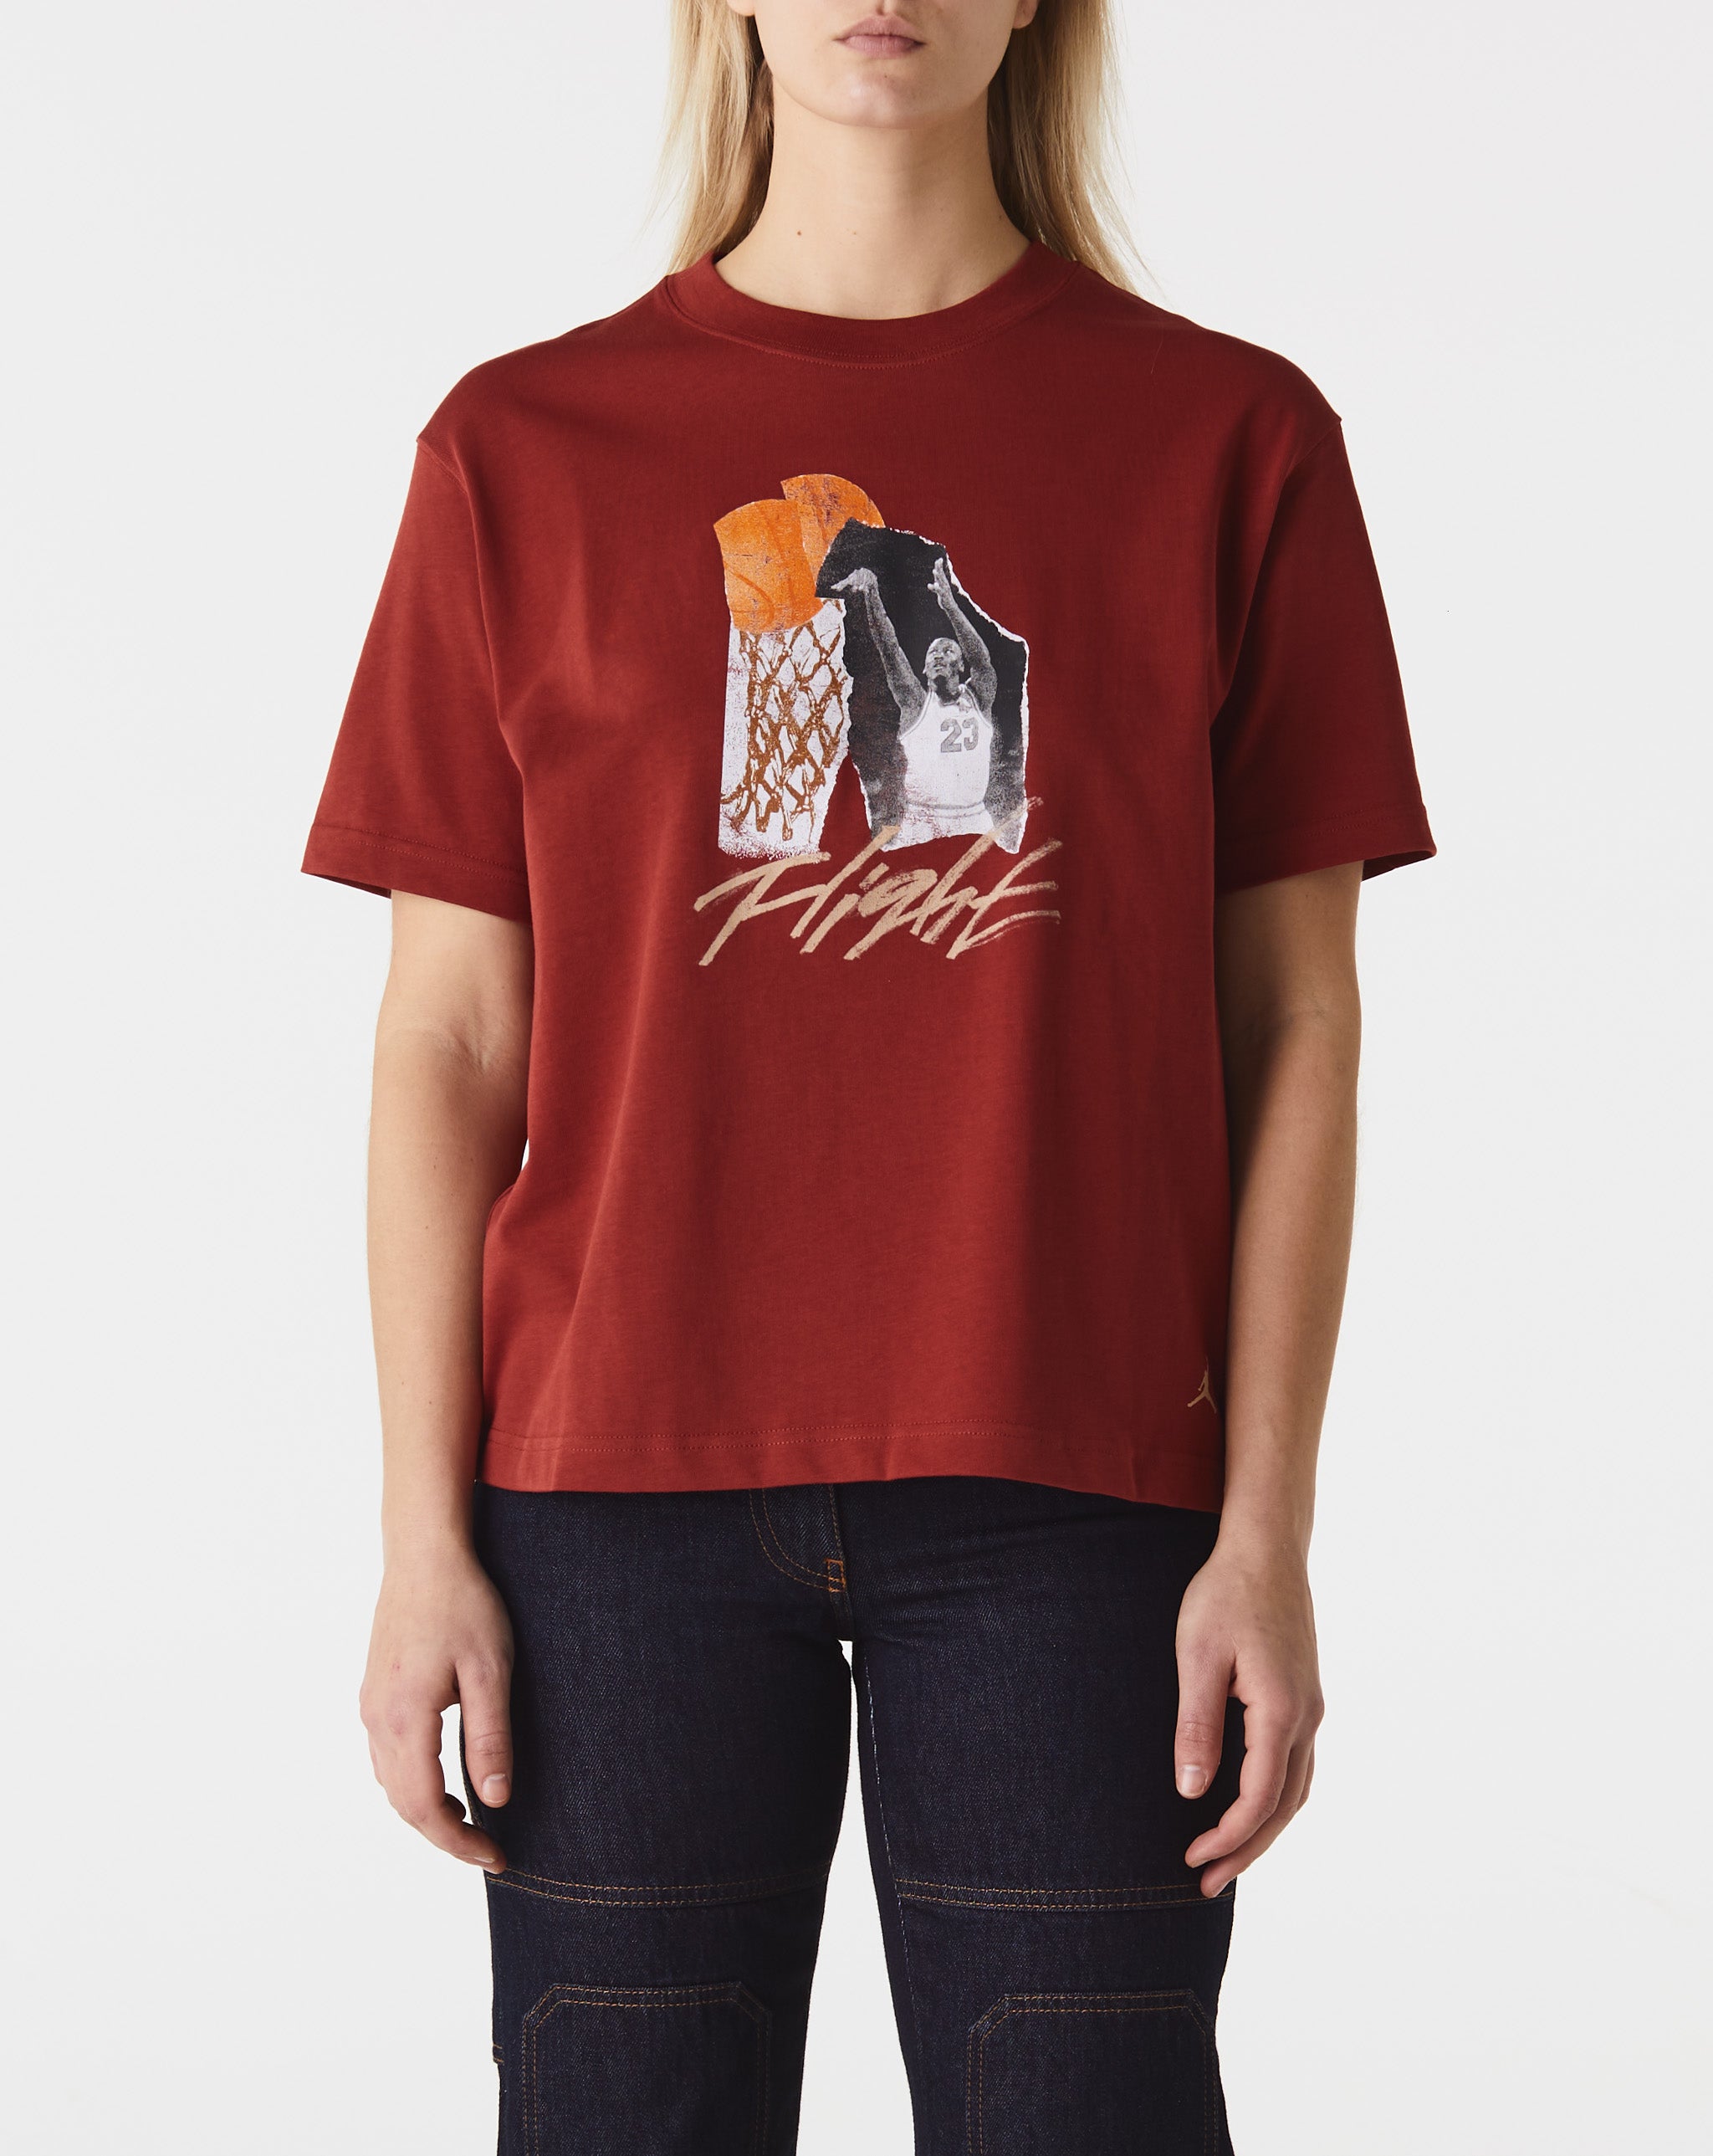 Air Jordan Women's Collage Girlfriend T-Shirt  - Cheap Urlfreeze Jordan outlet